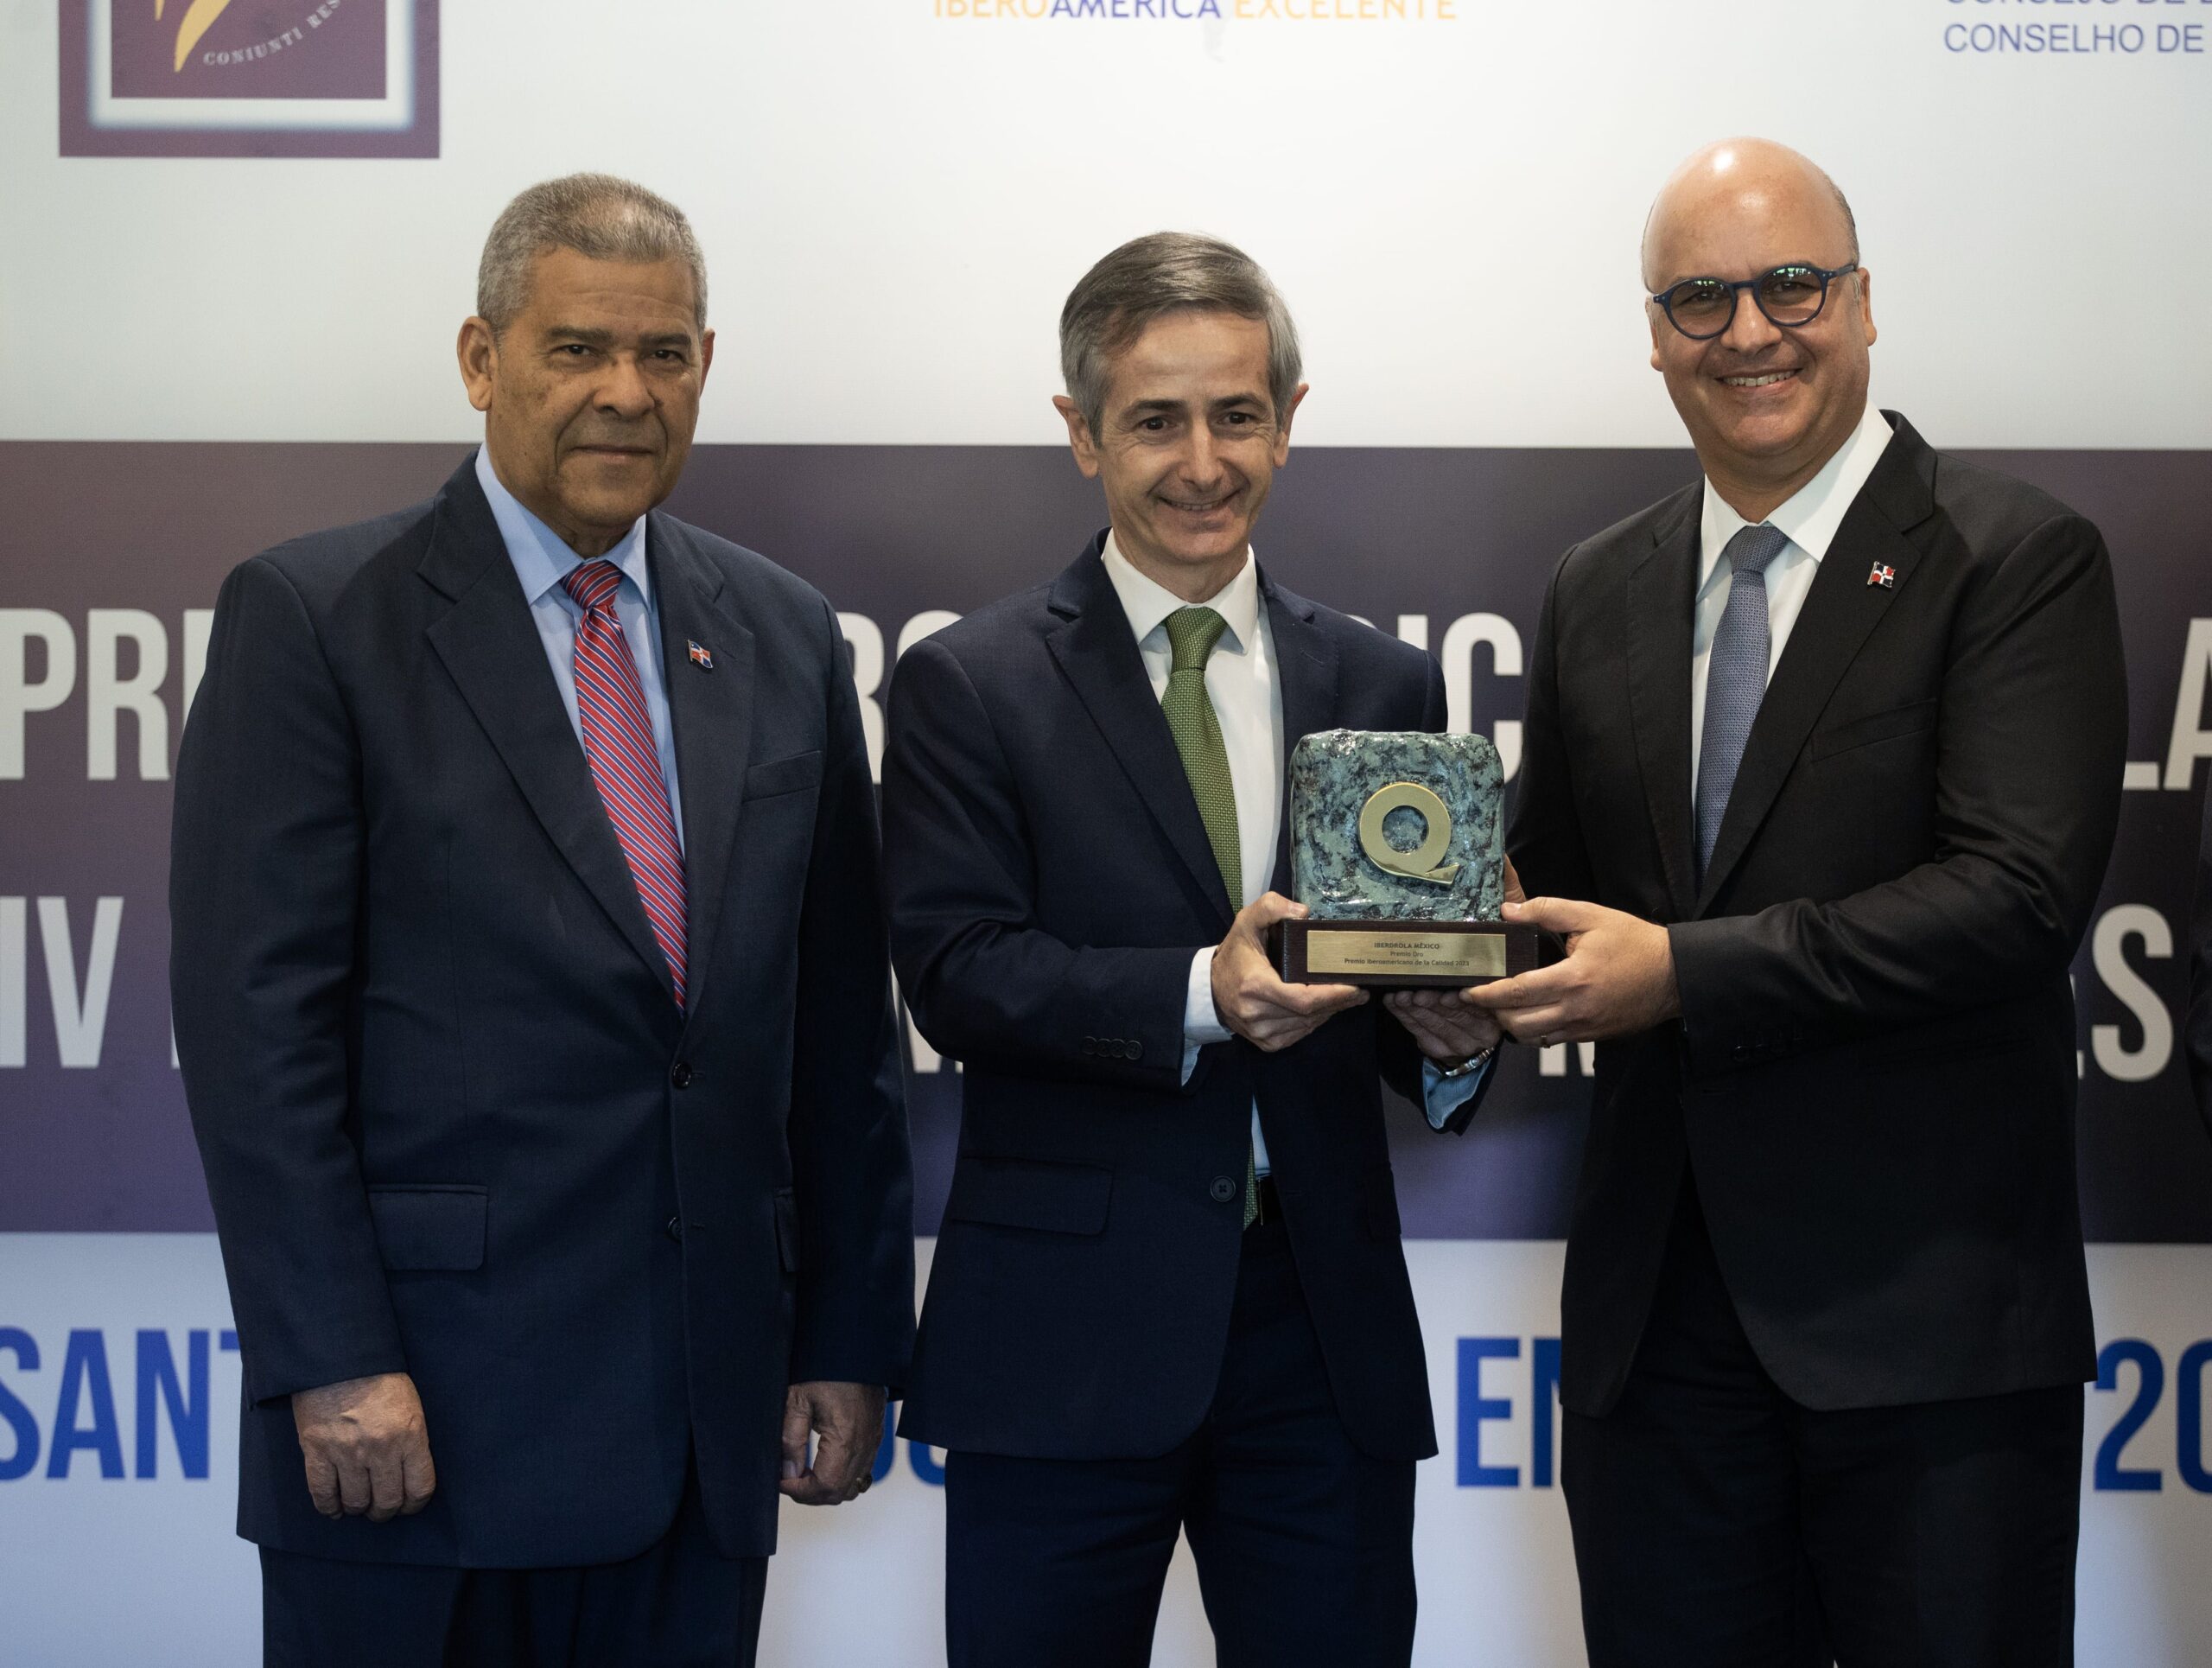 Iberdrola México recibe el Premio Iberoamericano de la Calidad en categoría Oro por su excelencia operativa